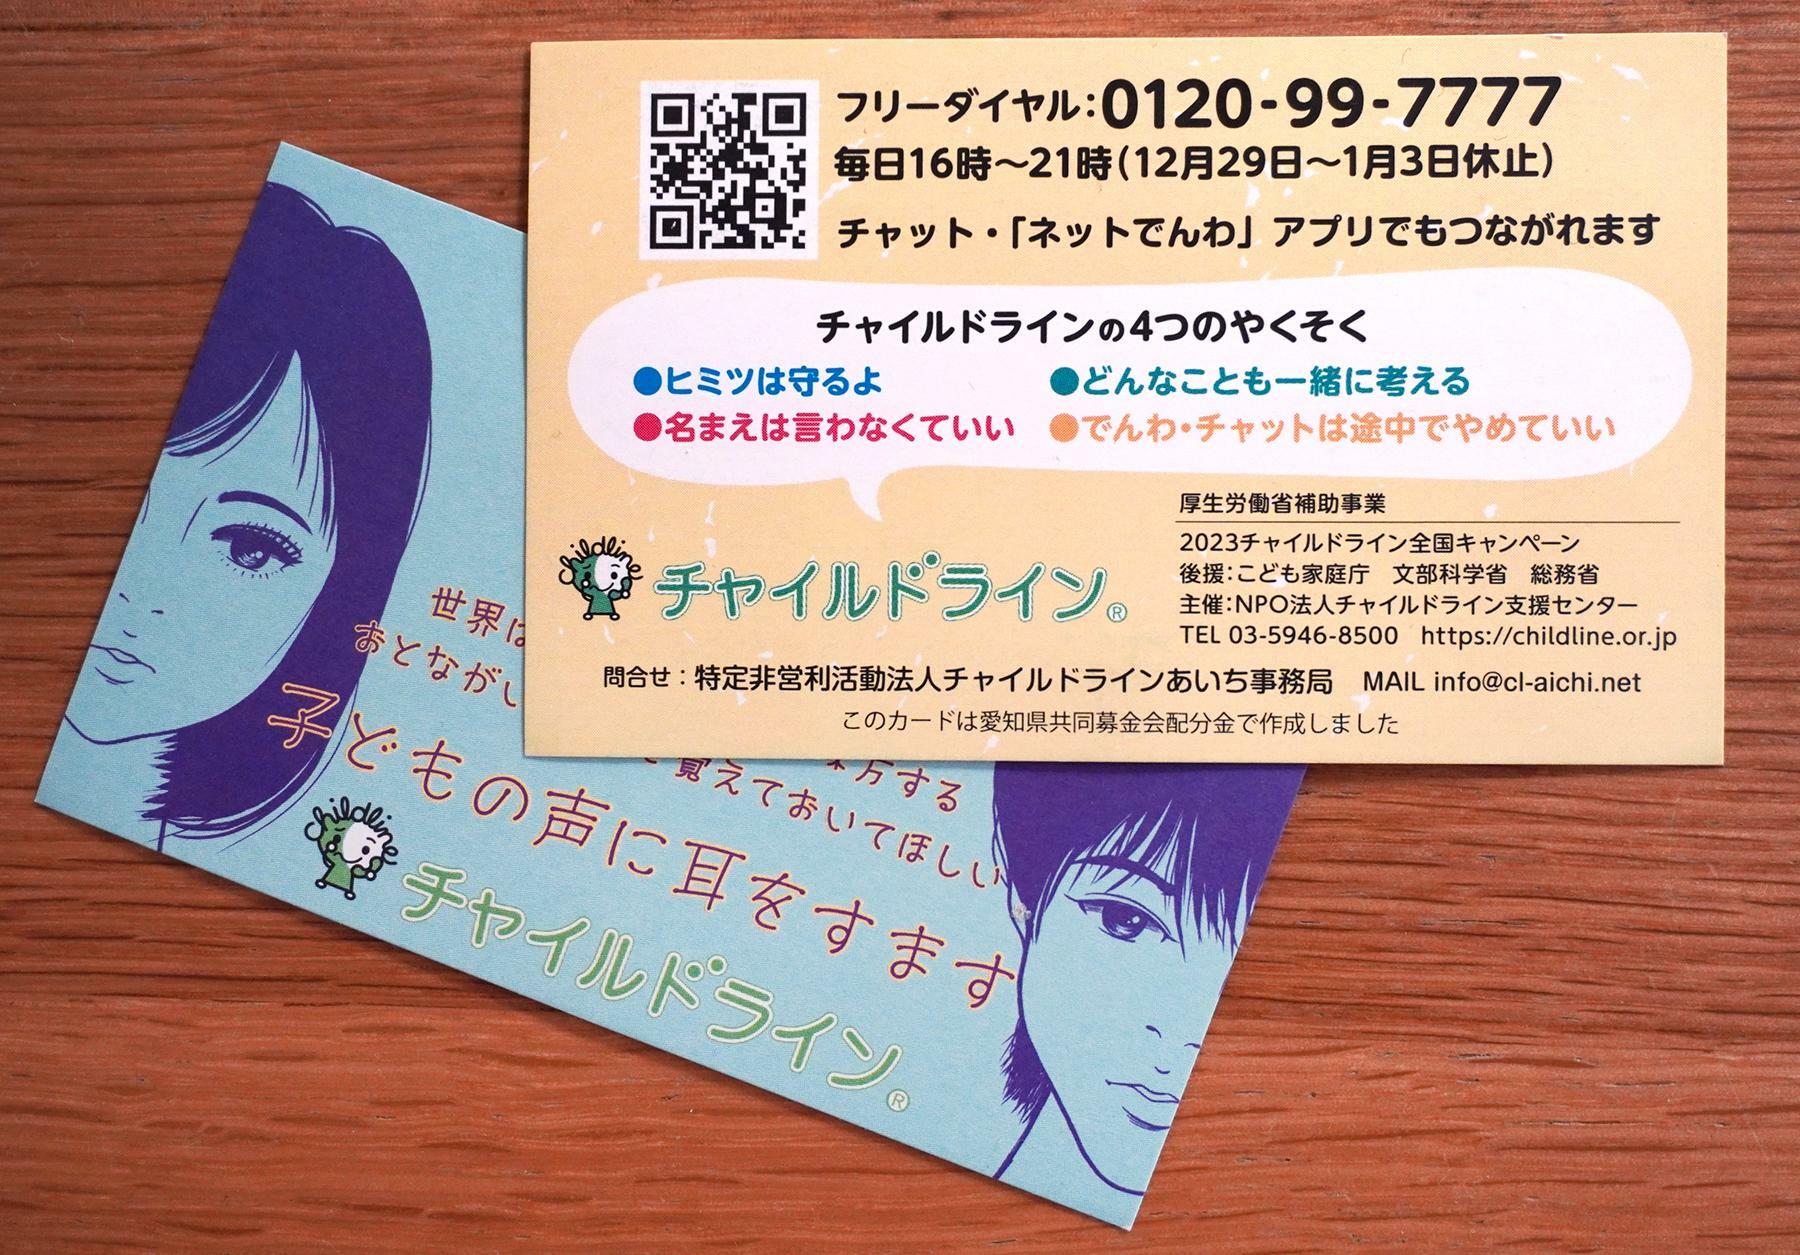 チャイルドラインあいちが愛知県内の学校などを通じて小中高生に配布しているカード＝筆者撮影